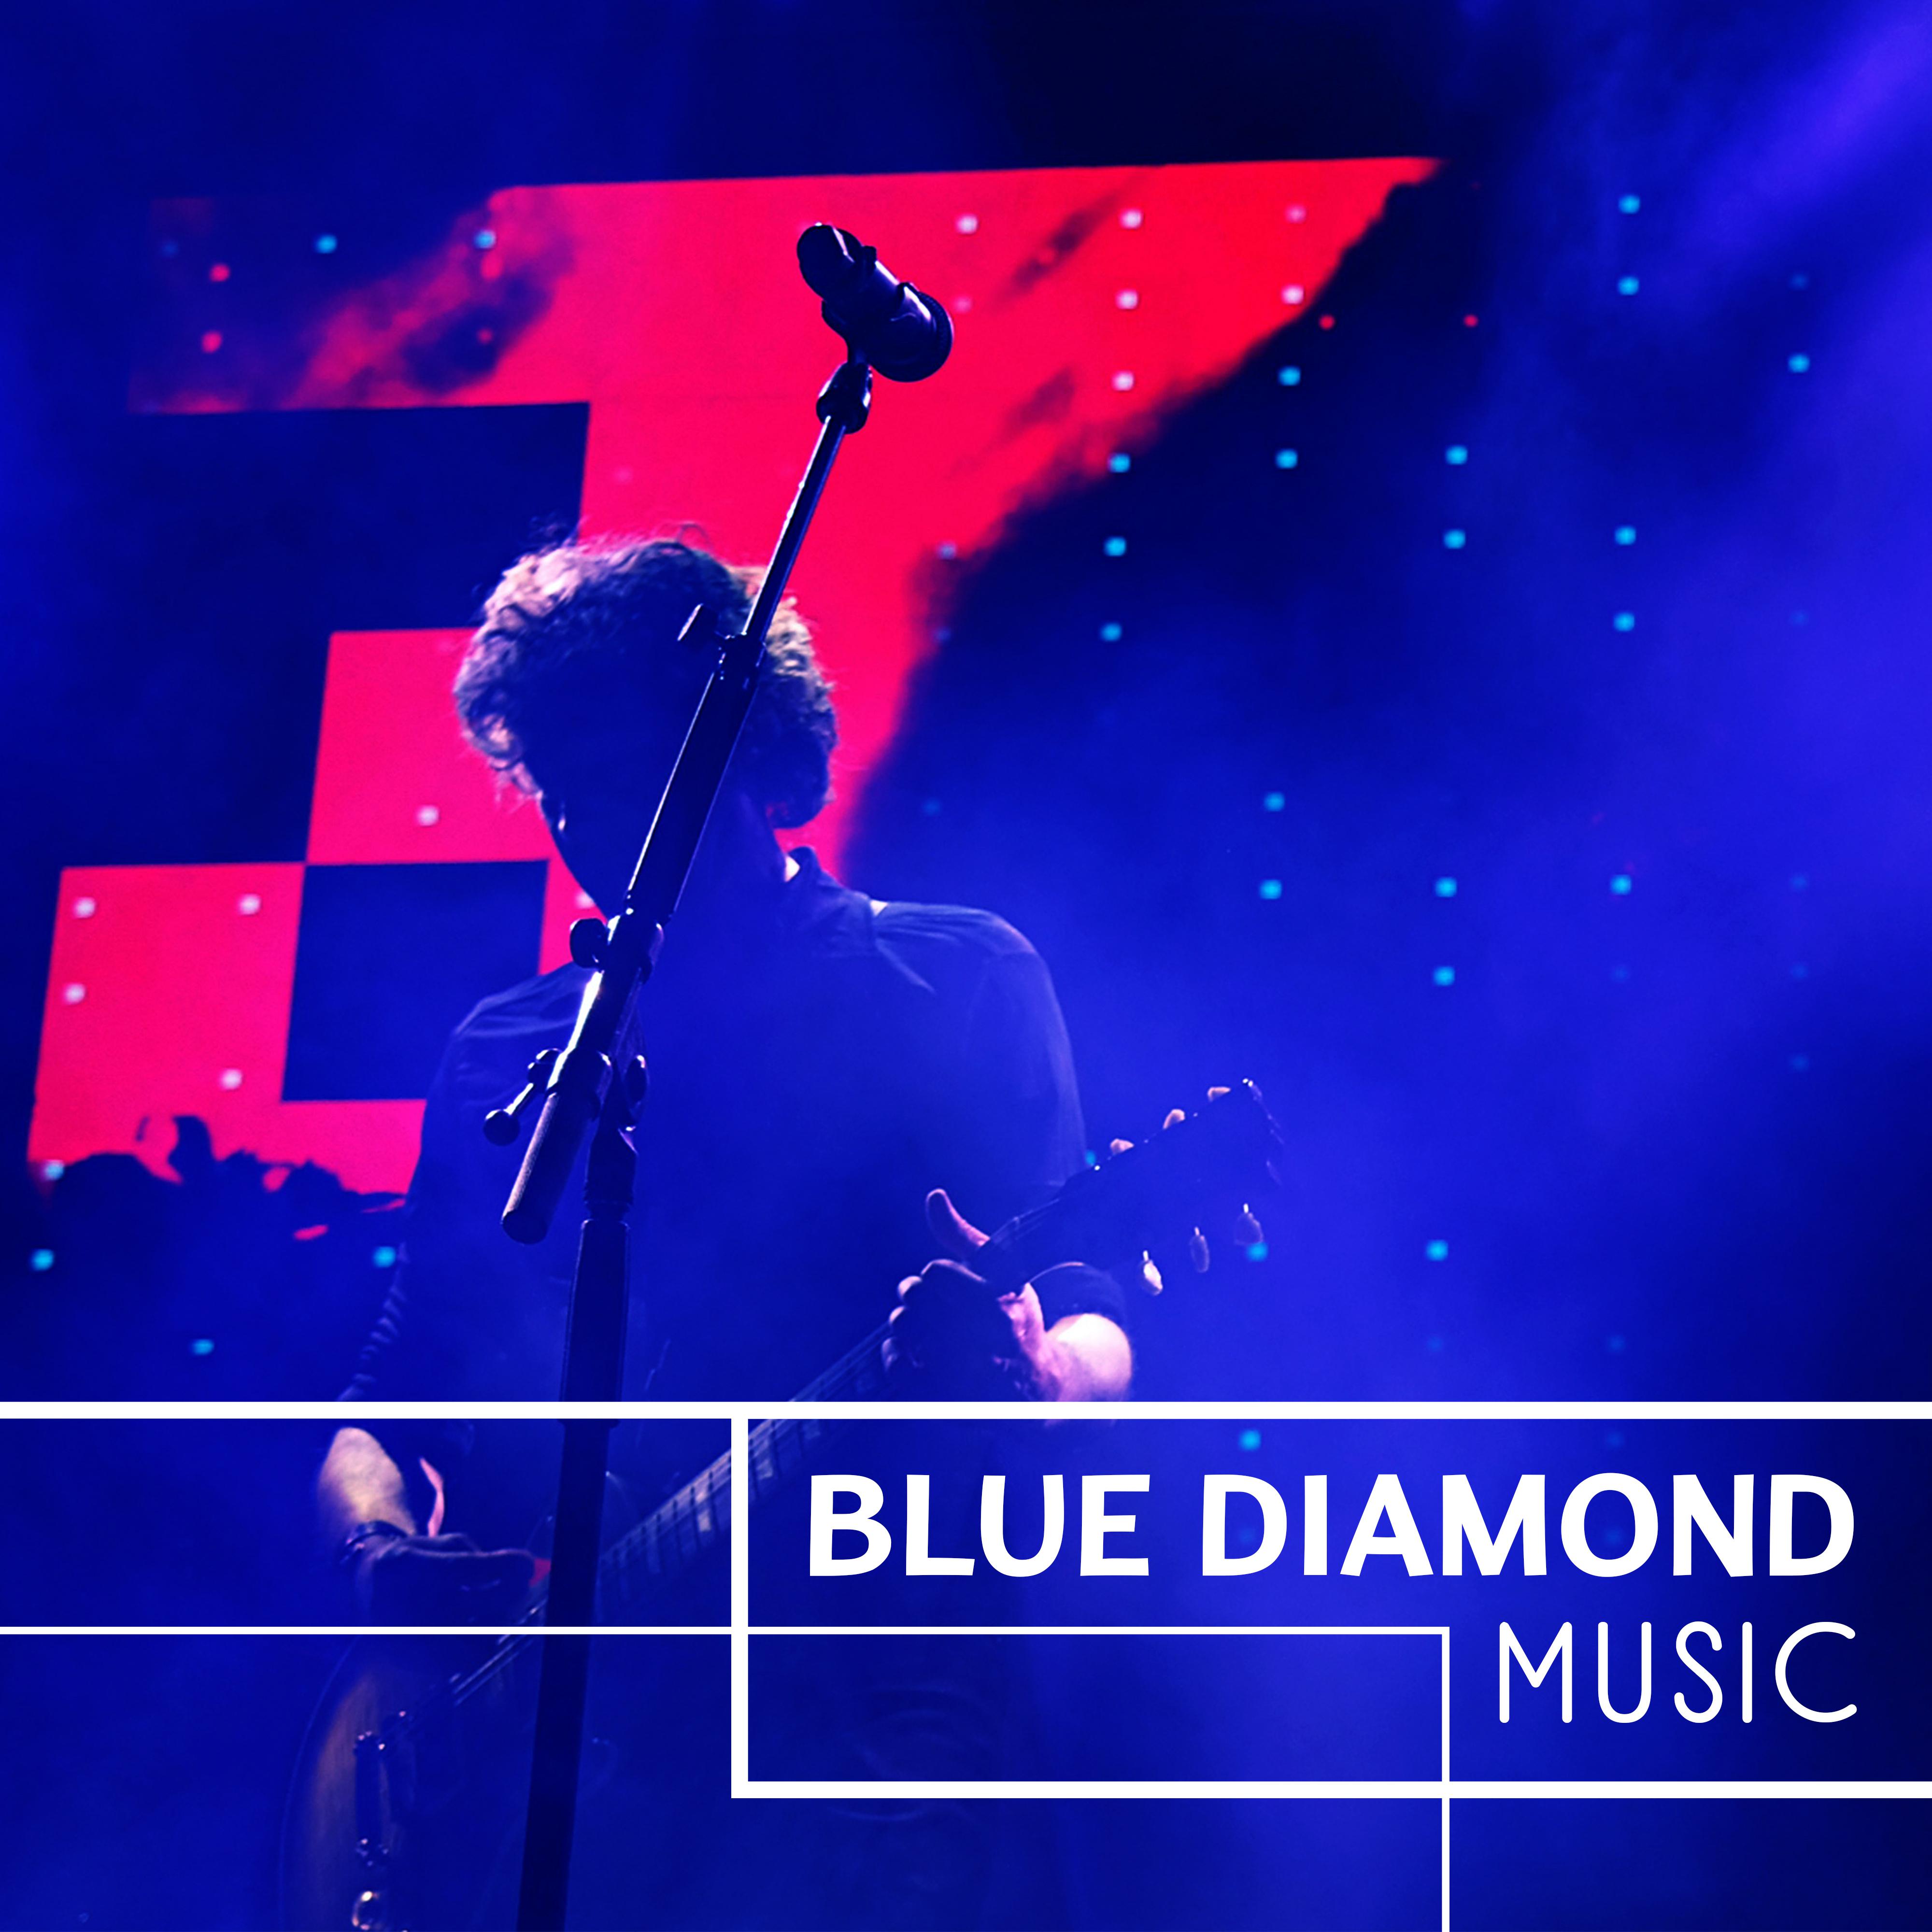 Blue Diamond Music - True Jazz, Musical Adventure, Variation on Piano, City of Jazz